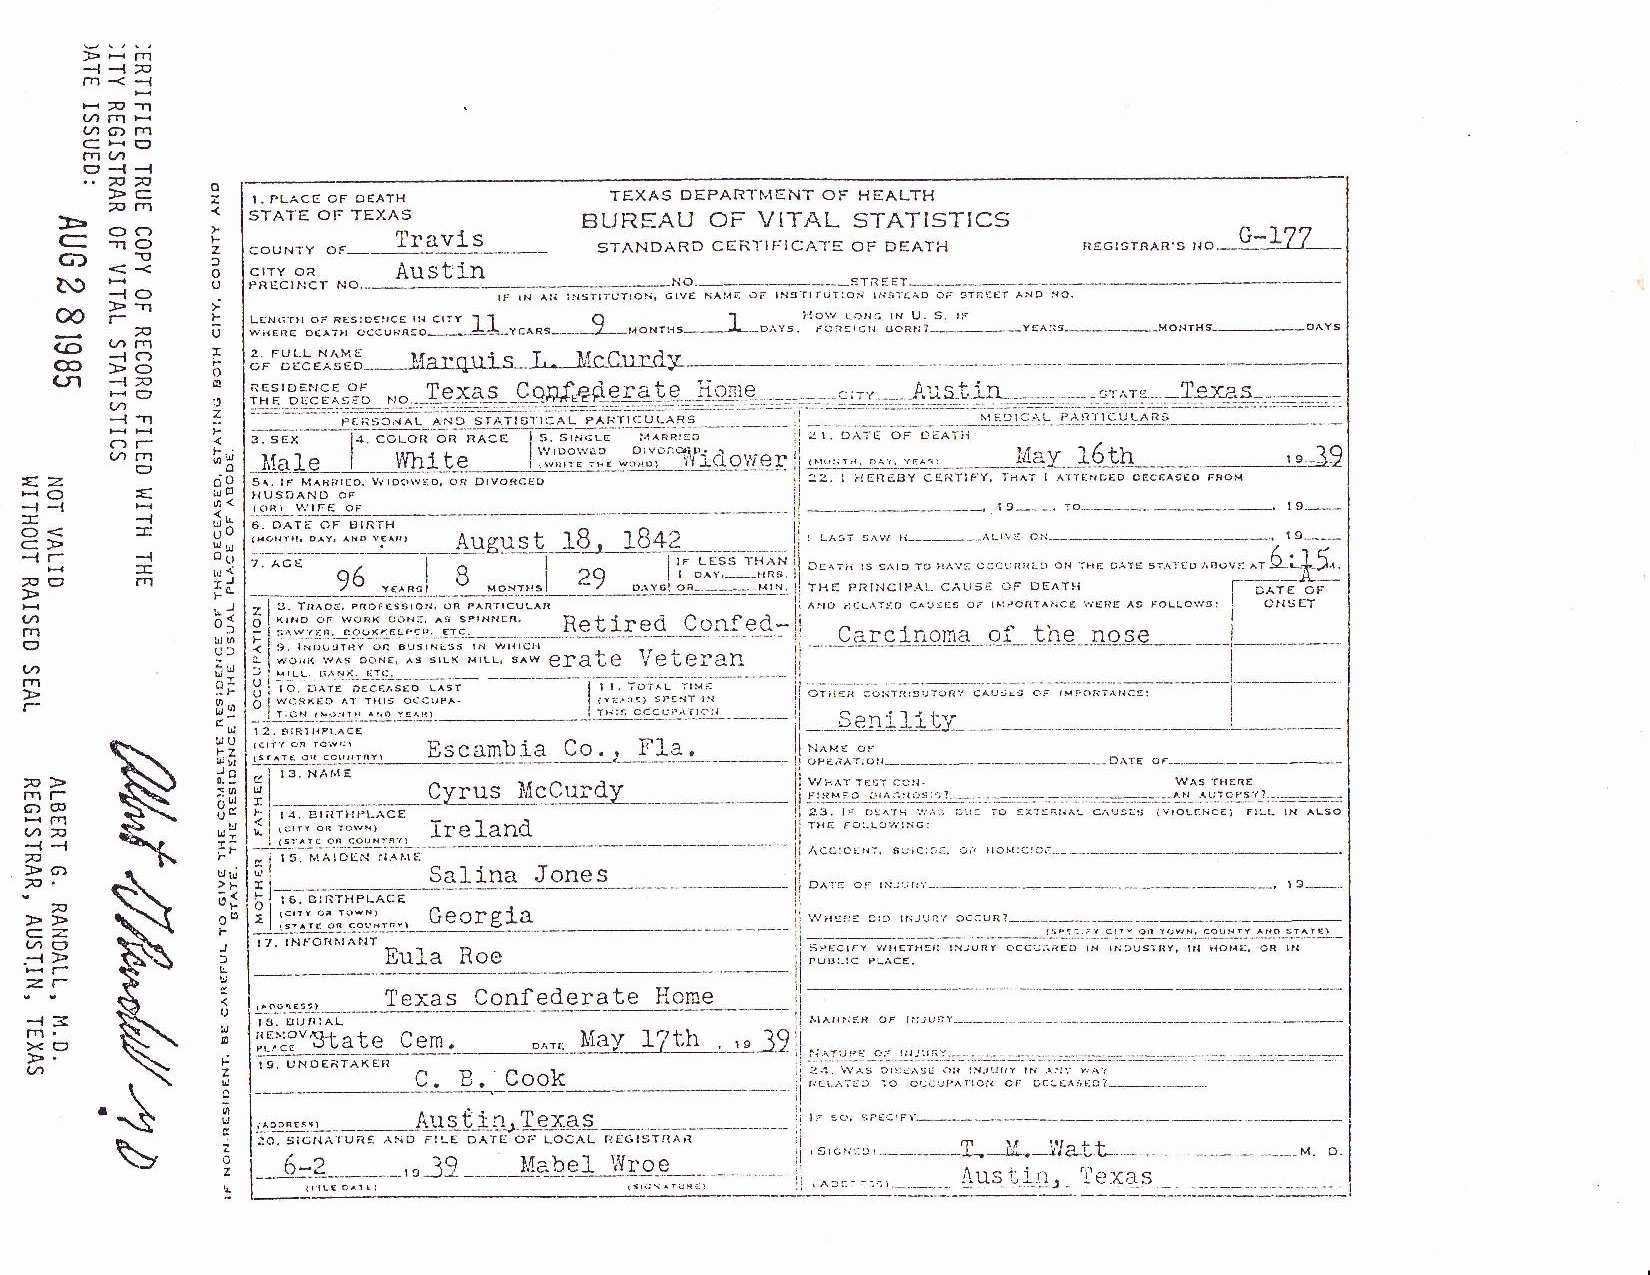 M.l. McCurdy Death Certificate